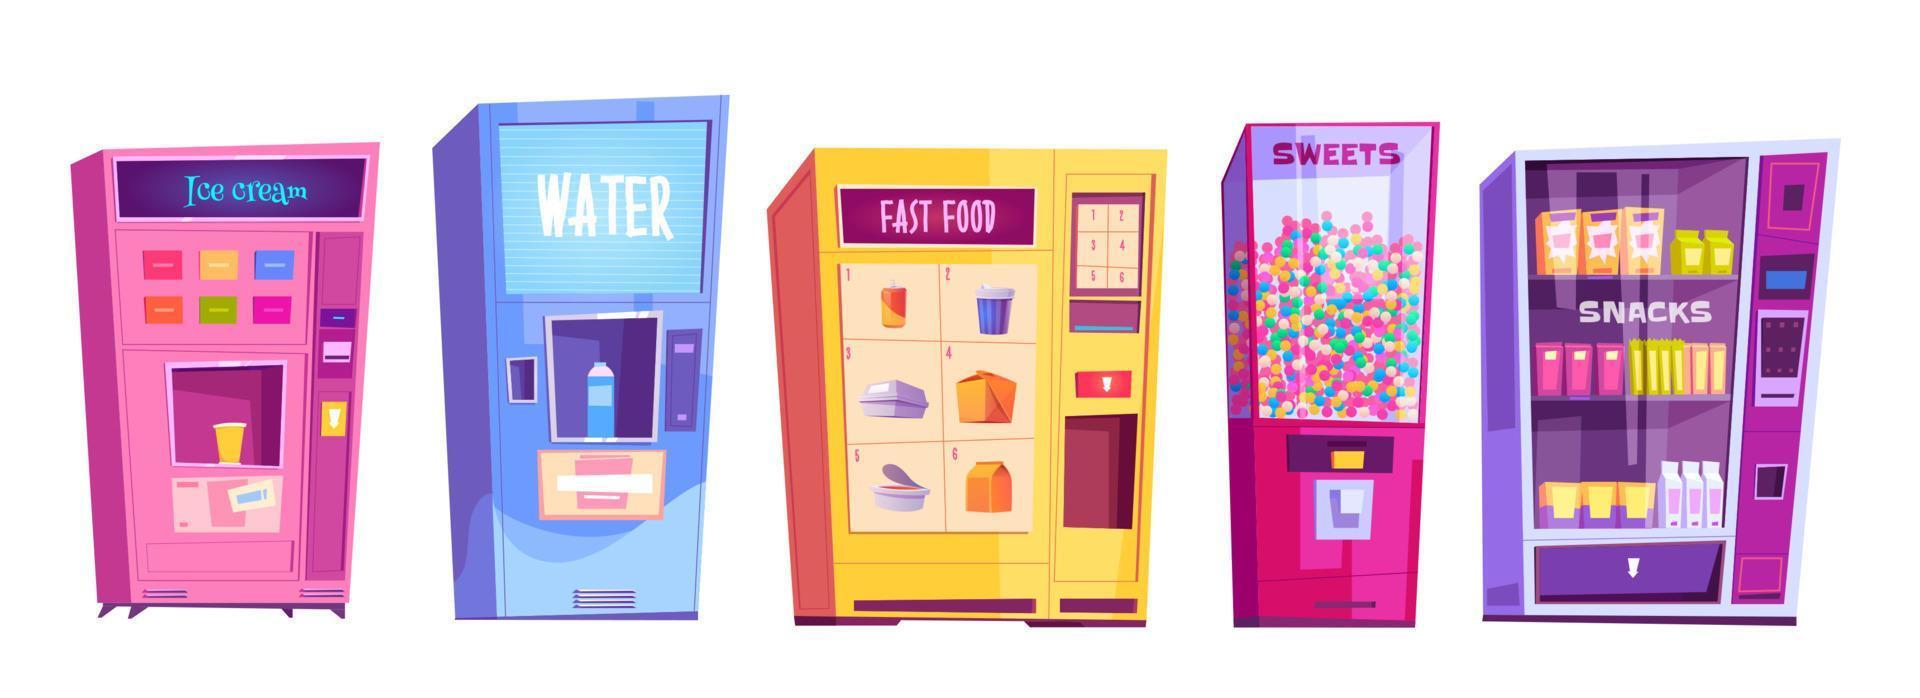 máquinas expendedoras de snacks, comida rápida, agua vector